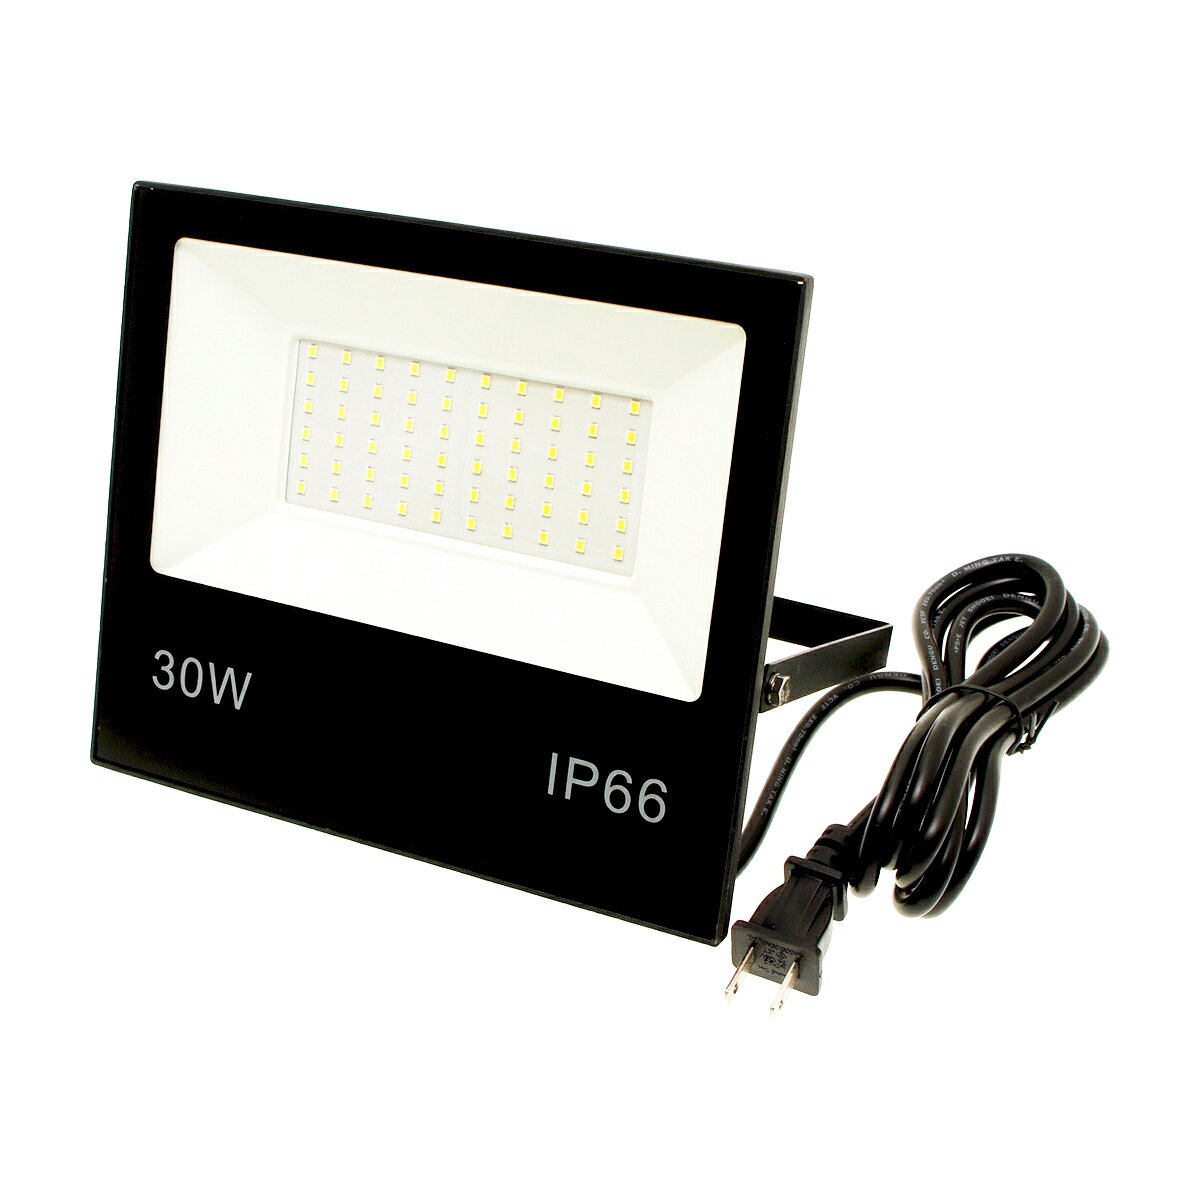 （10個セット）IP66 防雨形LED投光器 リアル30W IP66 薄型 昼光色 ブラック ACプラグ付き電源コード2m 送料無料 (沖縄・離島を除く) 節電 電気代節約